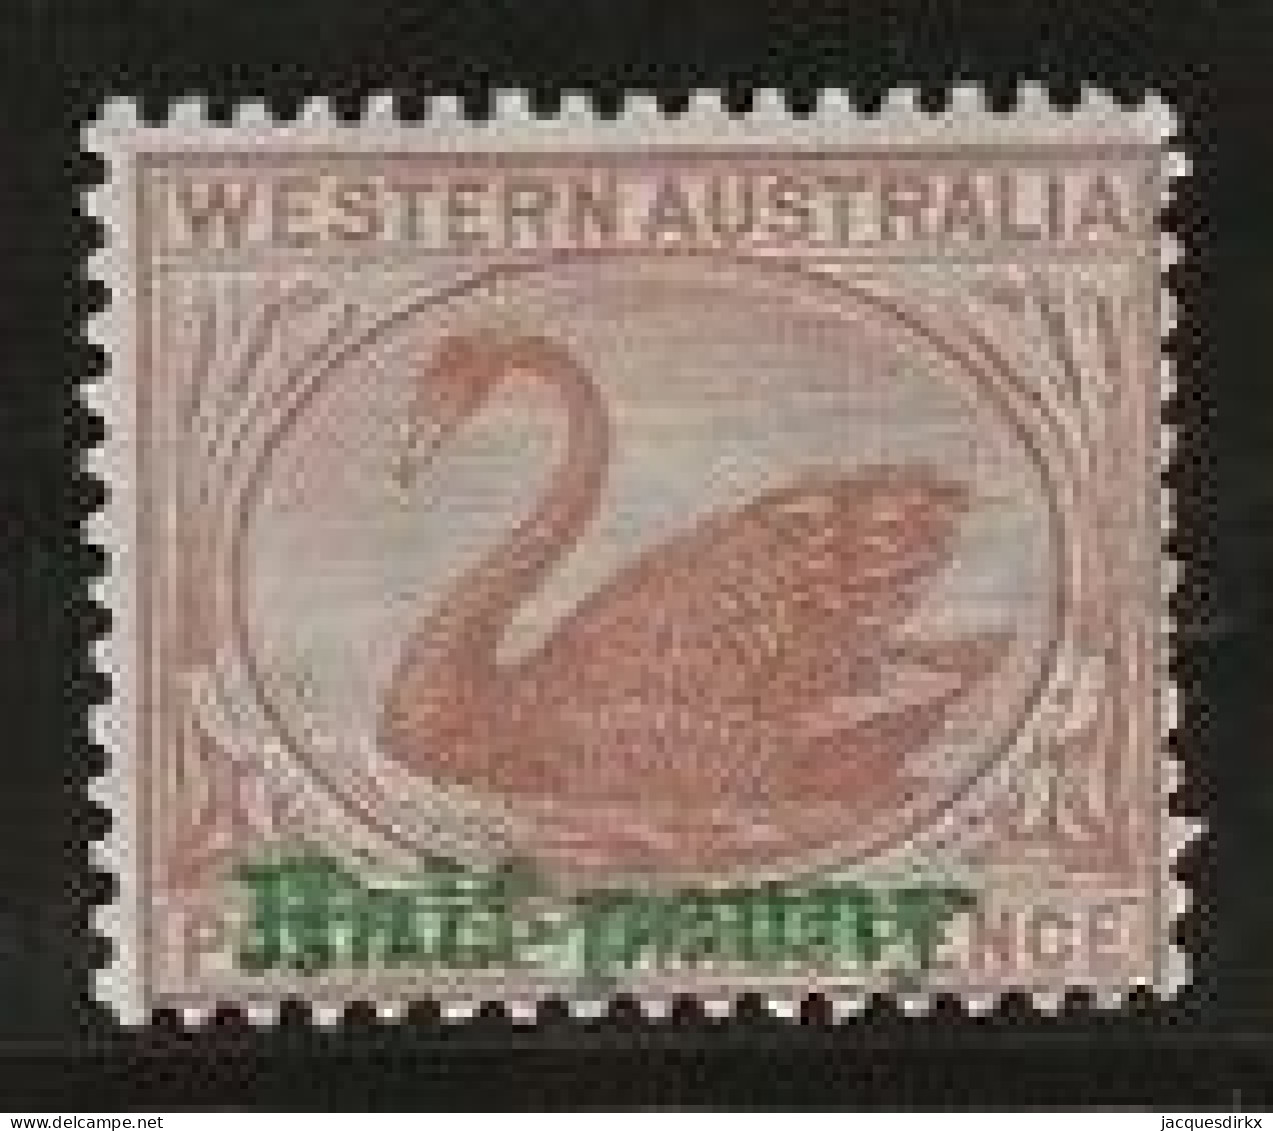 Western Australia     .   SG    .    110         .   *       .     Mint-hinged - Ungebraucht